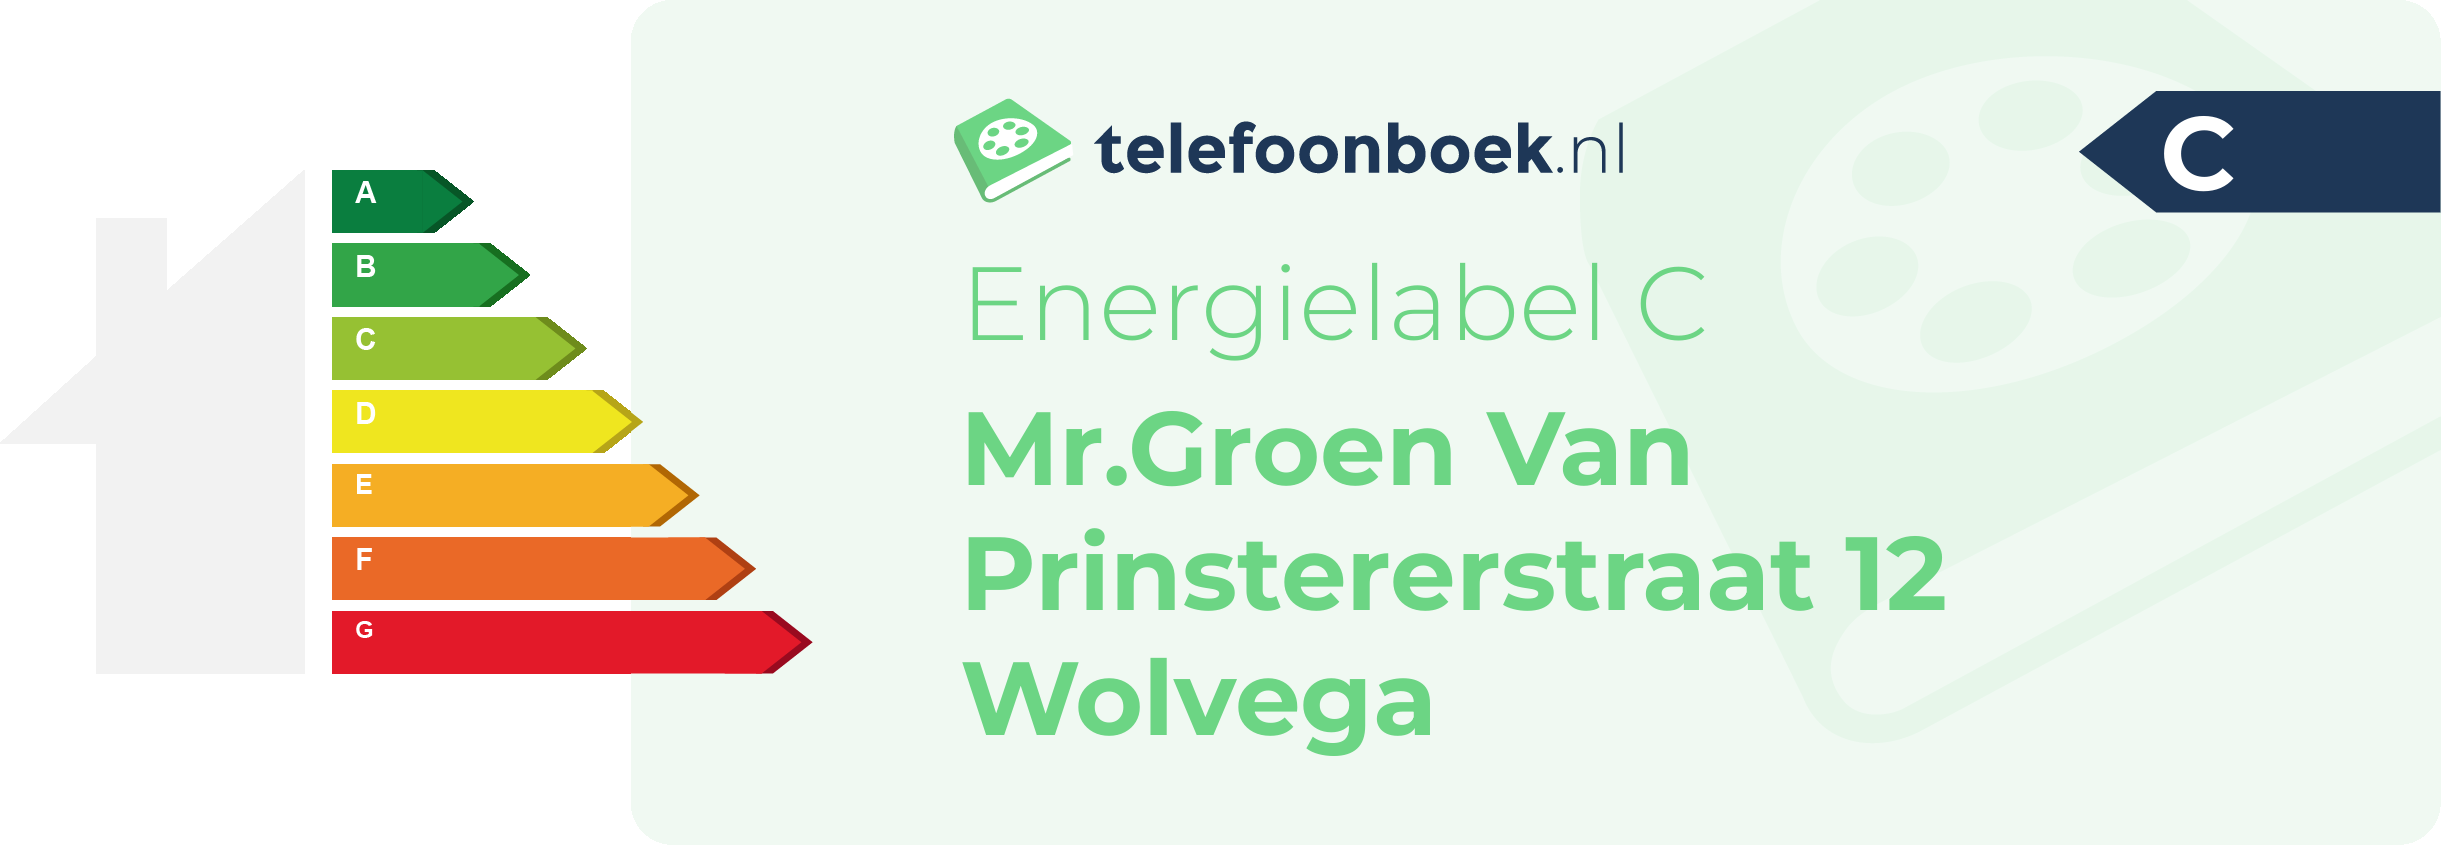 Energielabel Mr.Groen Van Prinstererstraat 12 Wolvega